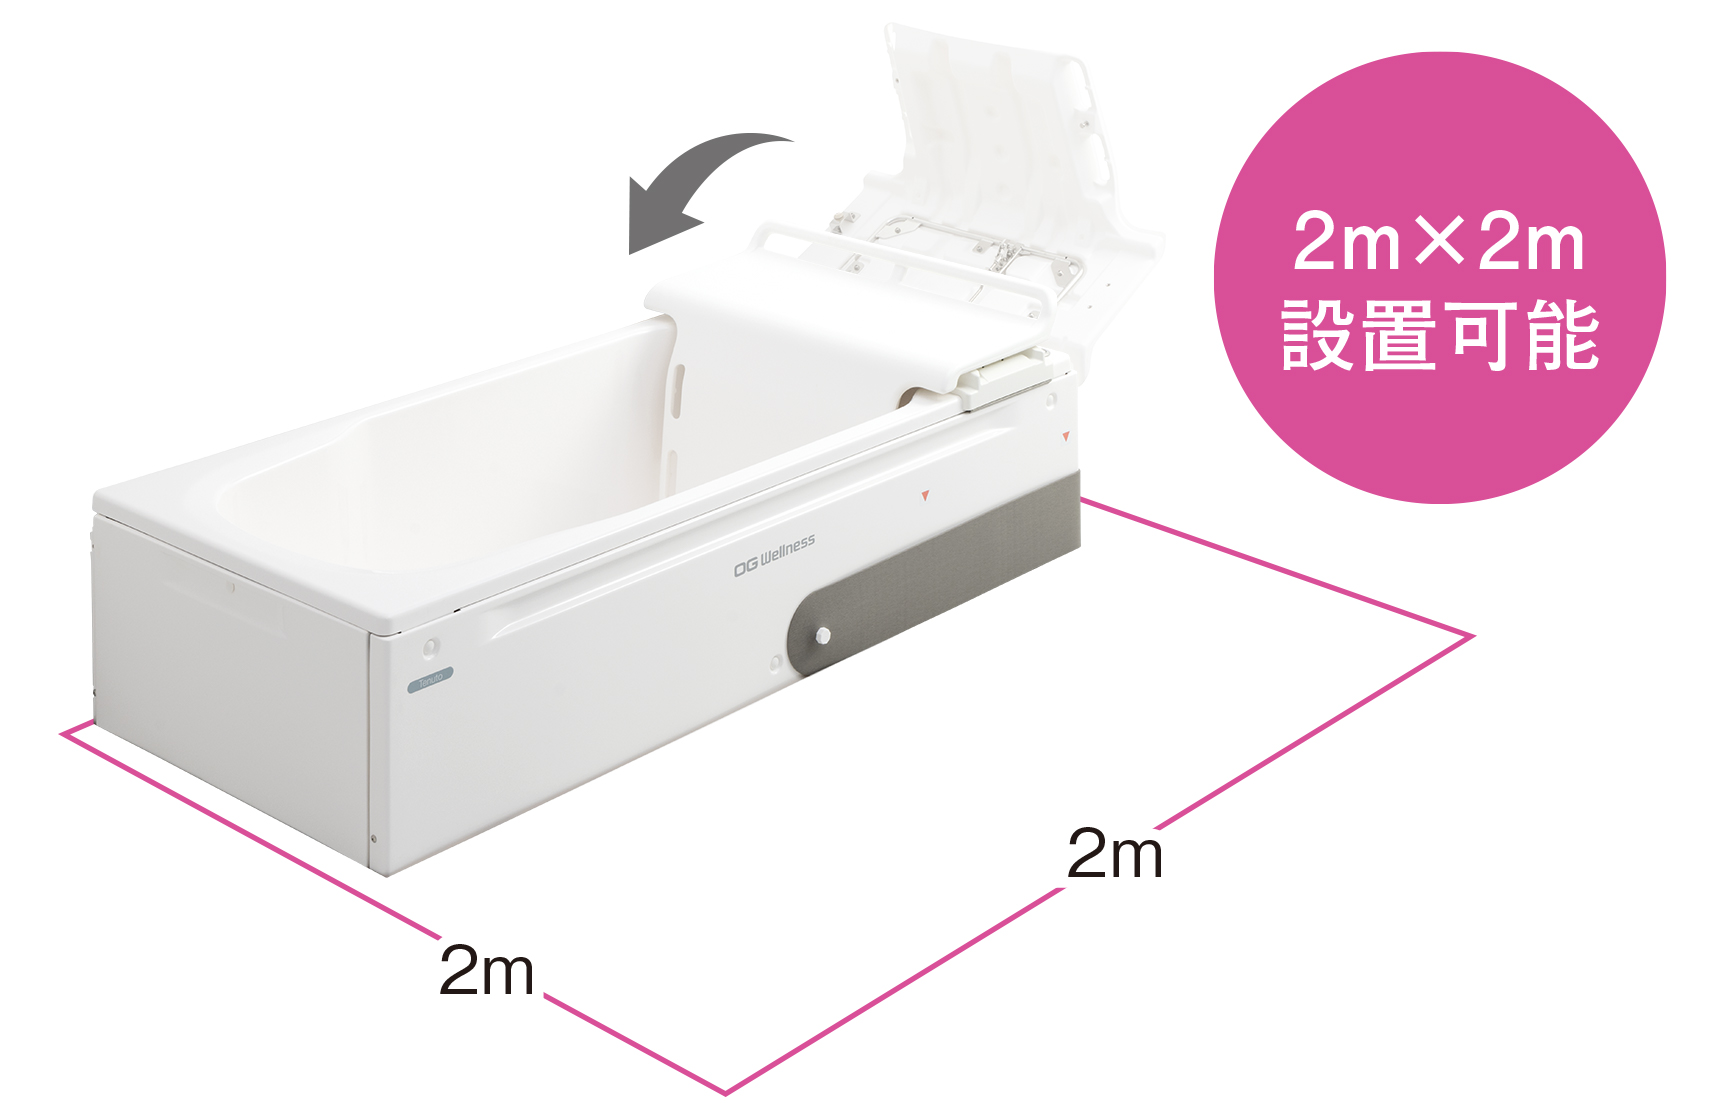 2m×2mの浴室に設置可能なコンパクト設計